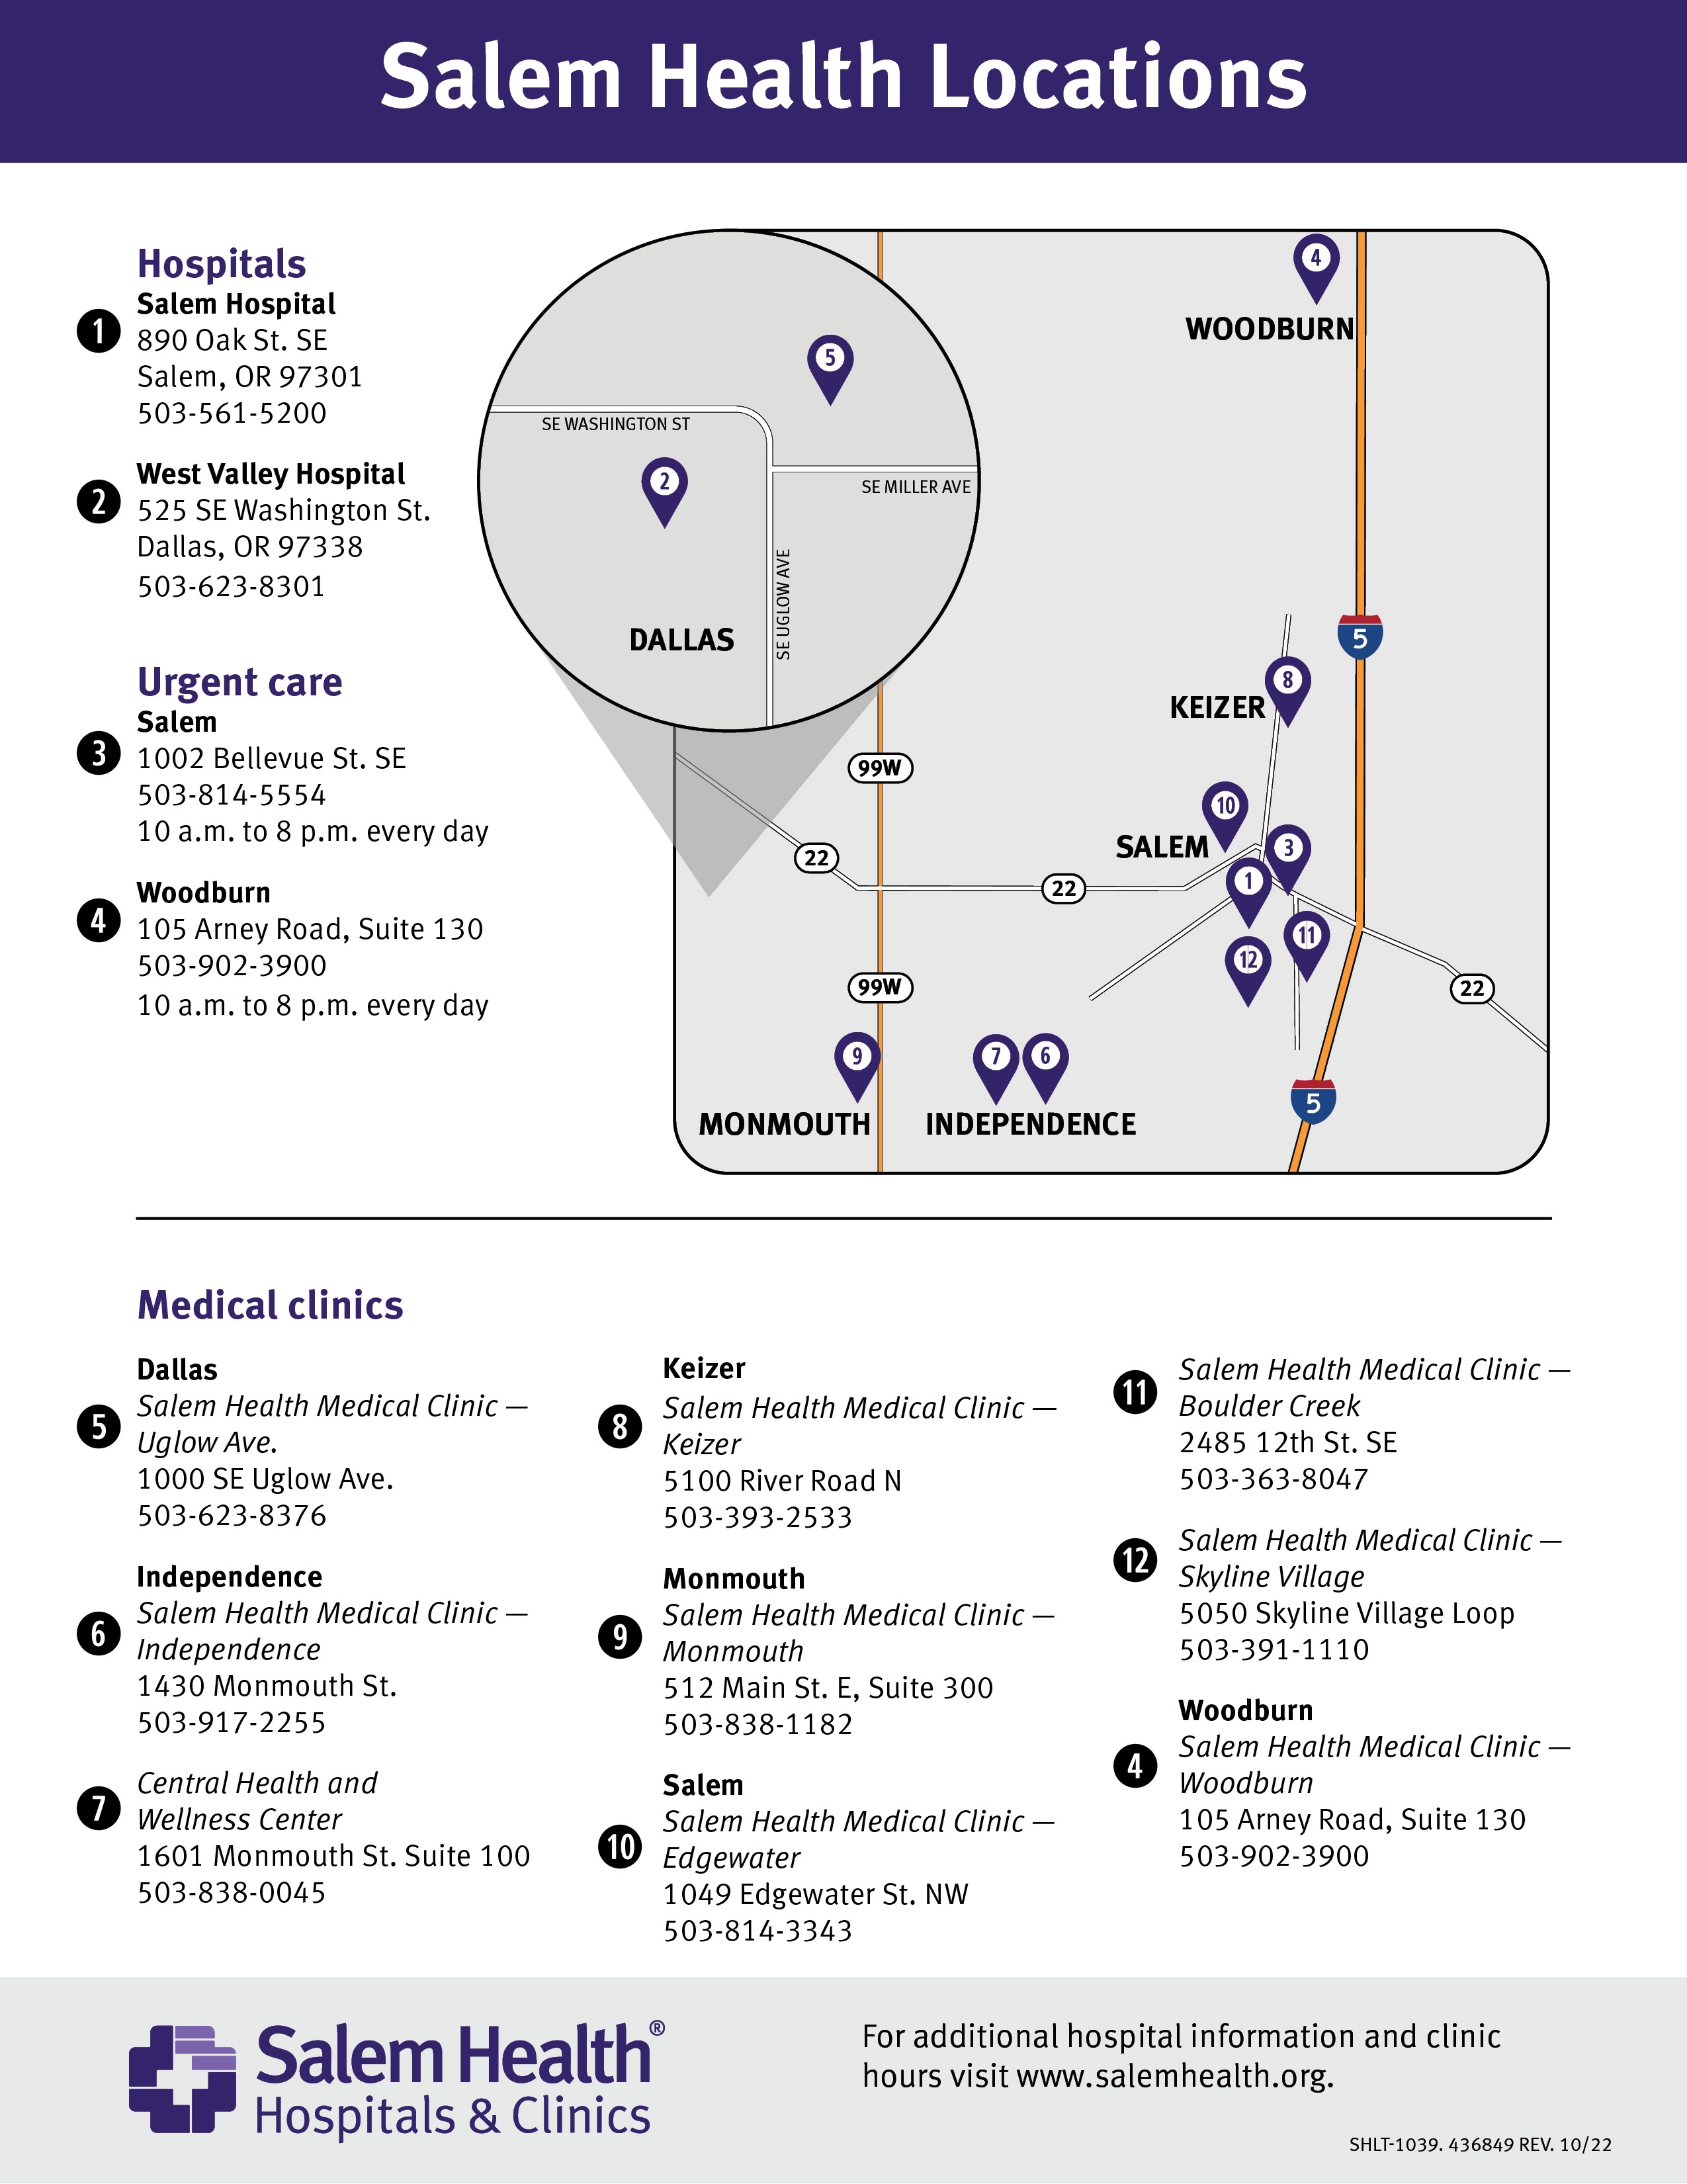 Salem Health Medical Clinics locations